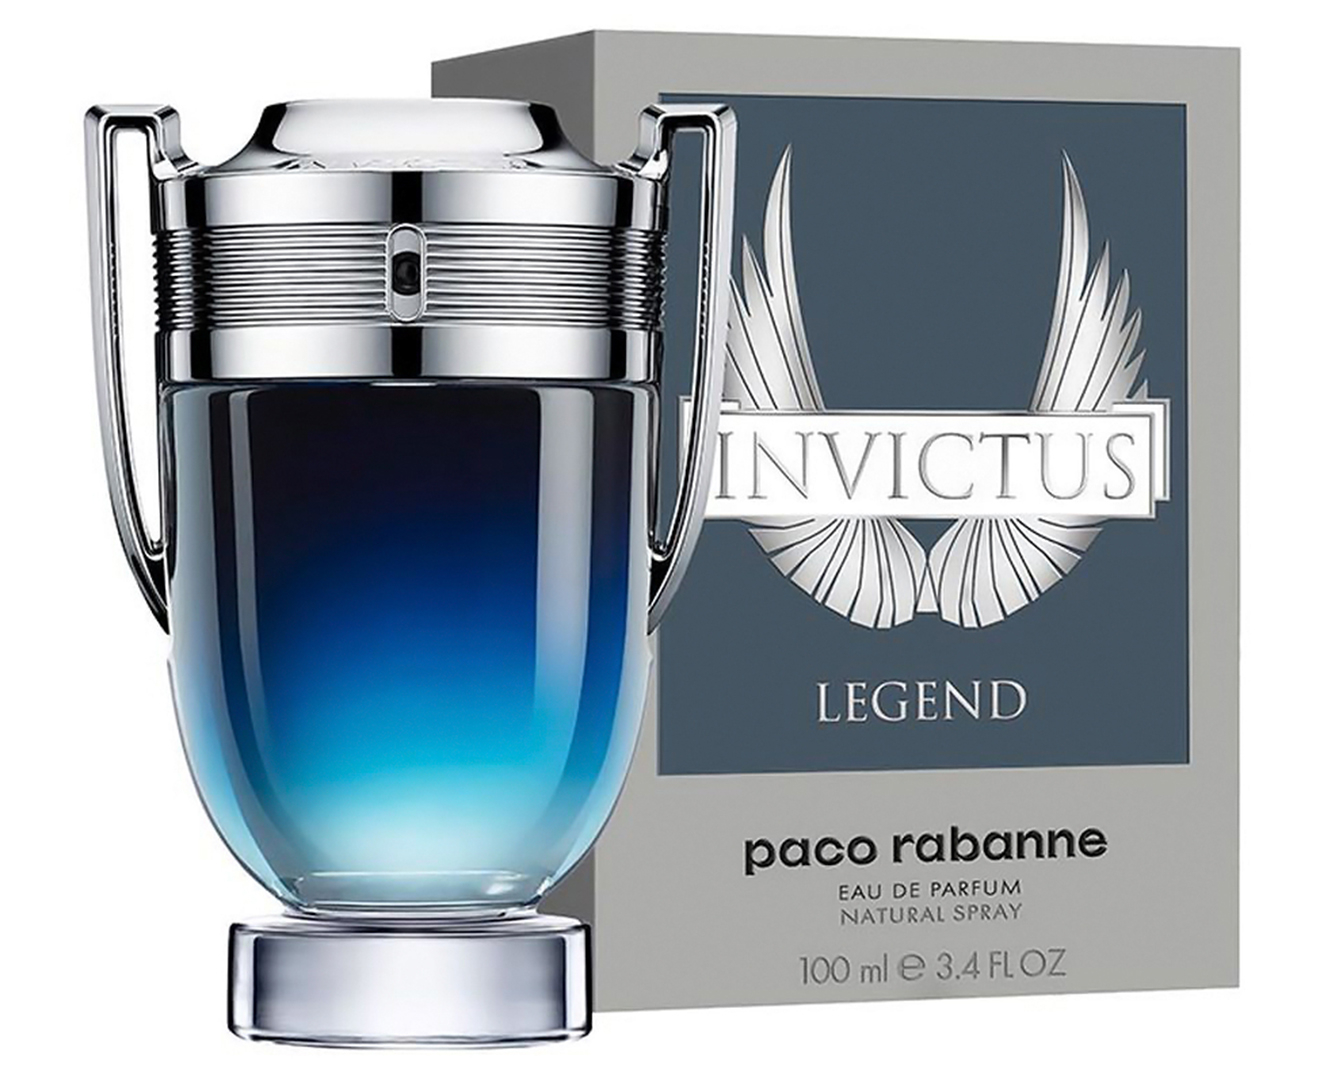 Paco Rabanne Invictus Legend For Men EDP Perfume 100mL | Catch.com.au